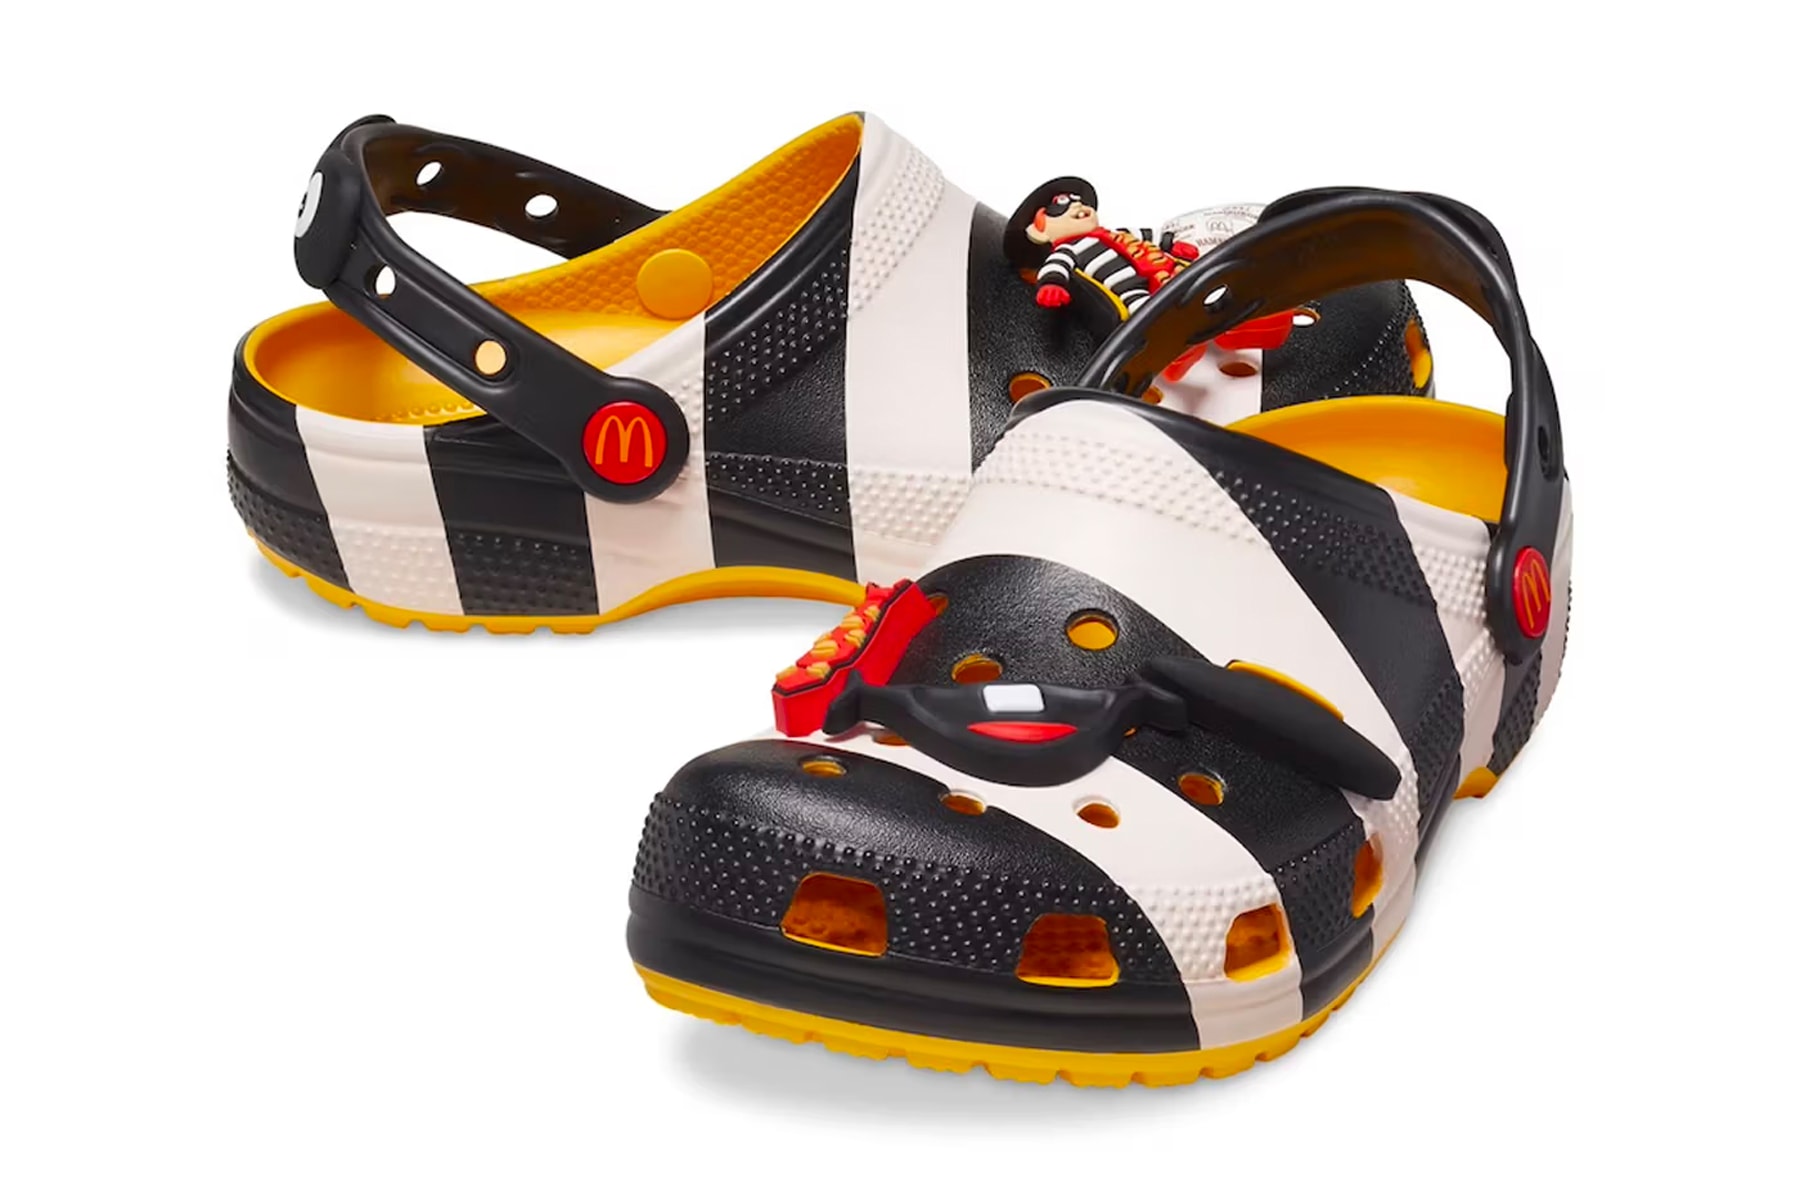 Crocs x McDonald's 全新聯名鞋款正式登場